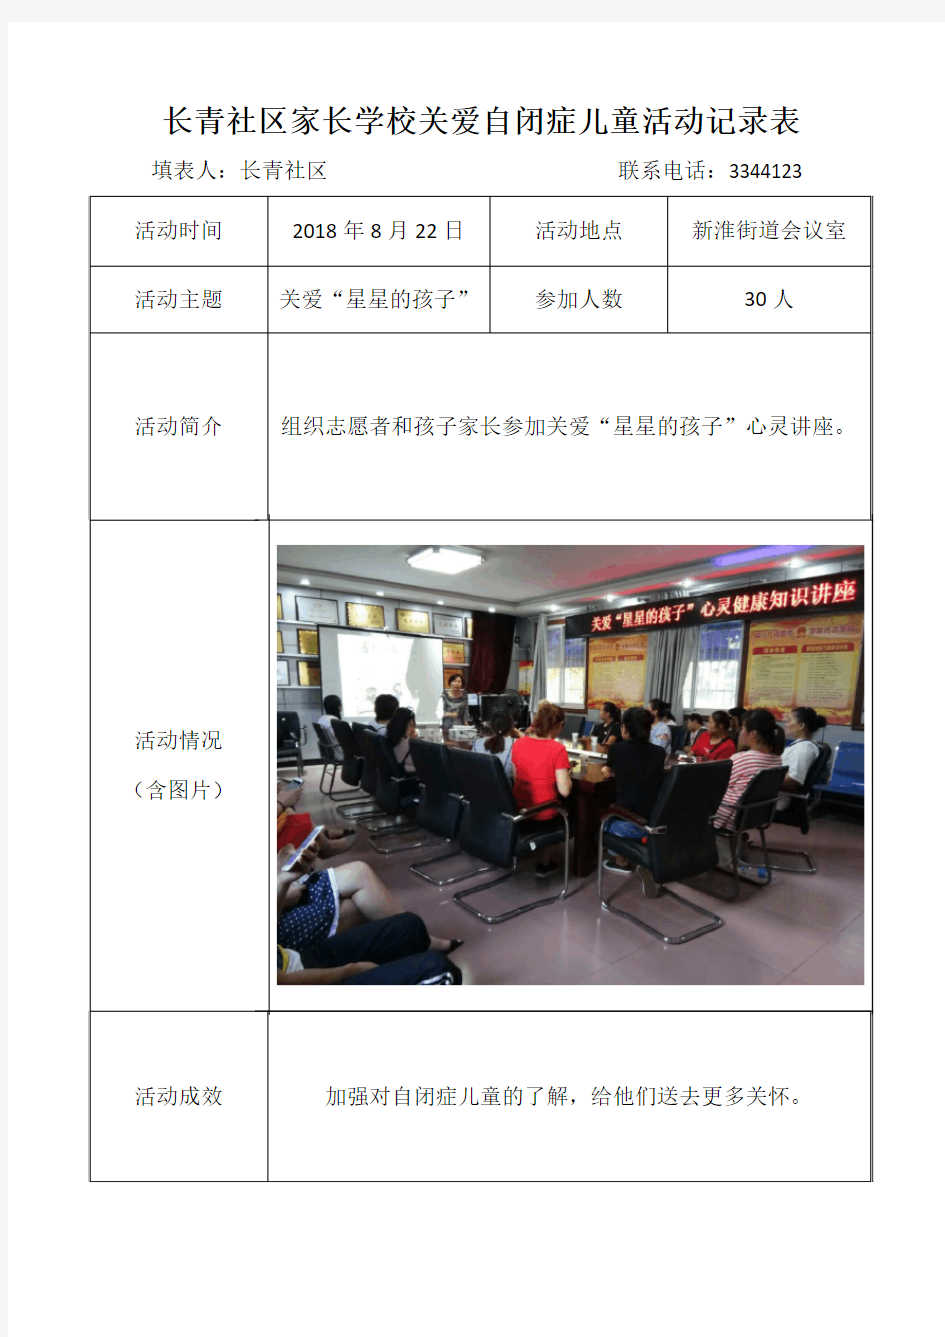 2018年8月22日长青社区家长学校关爱自闭症儿童活动记录表